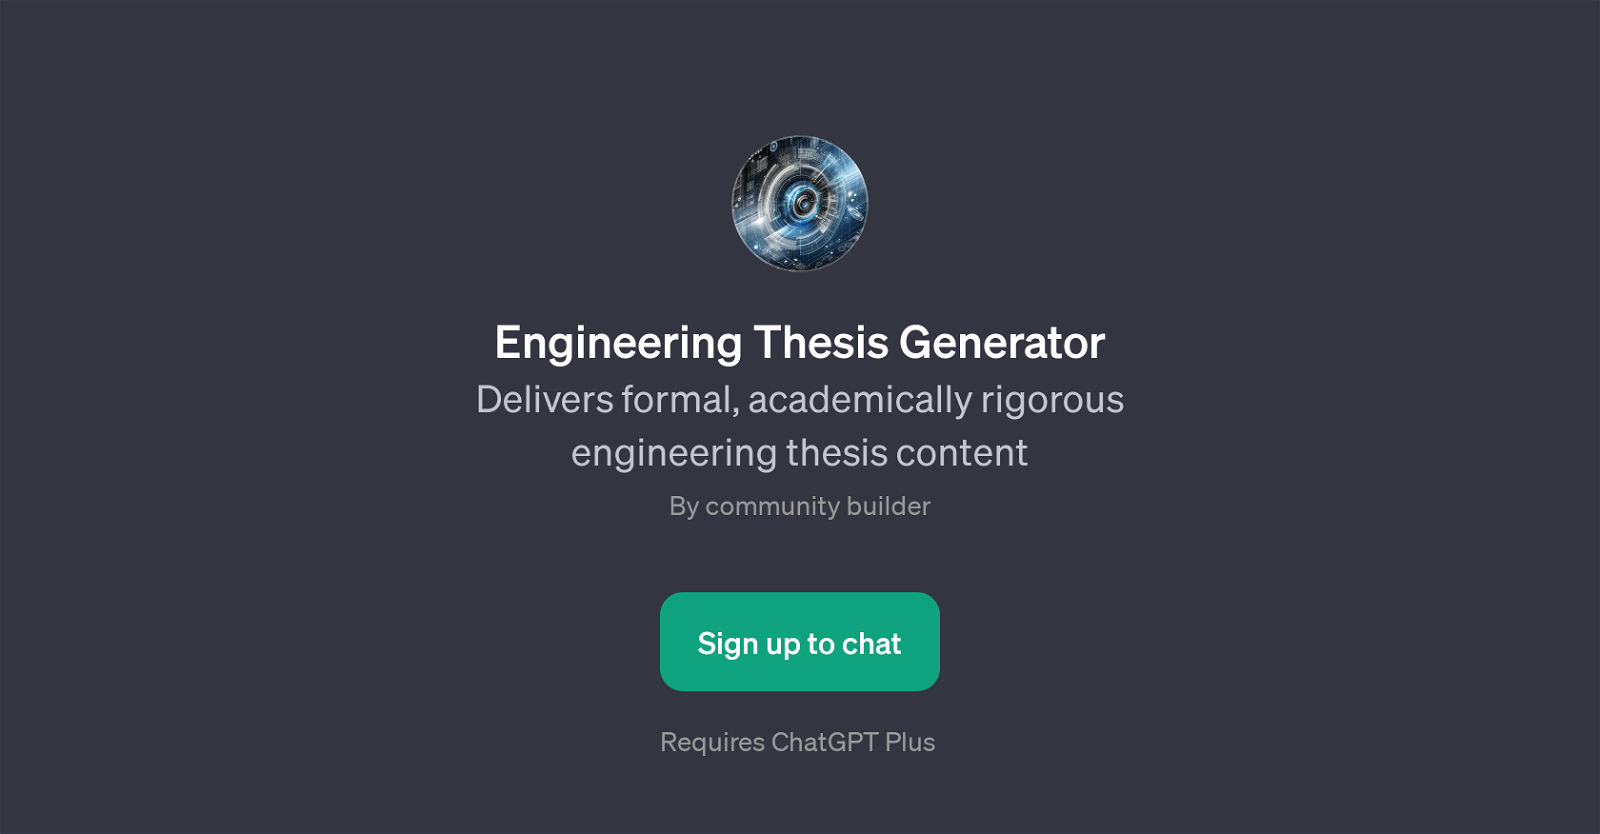 Engineering Thesis Generator website